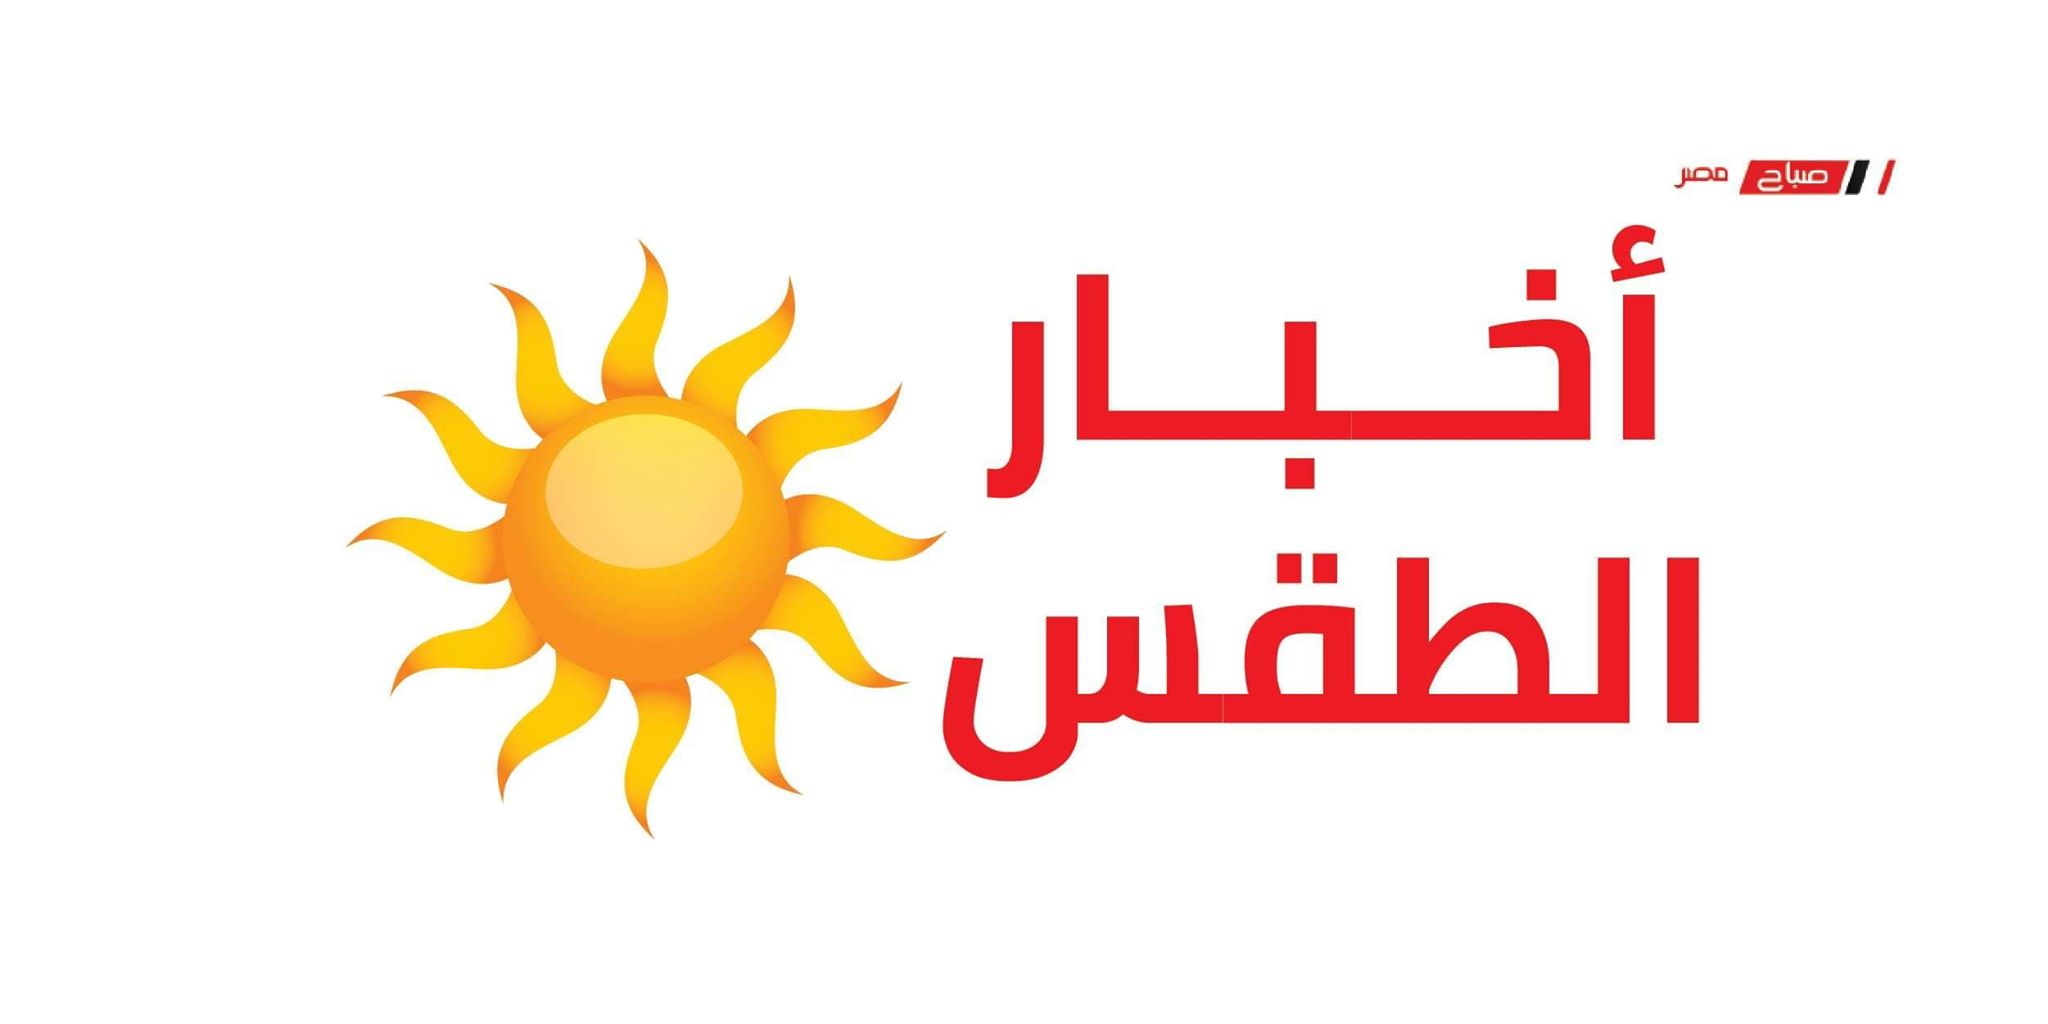 طقس القاهرة معتدل خلال الساعات القادمة والعظمى تسجل 27 درجة